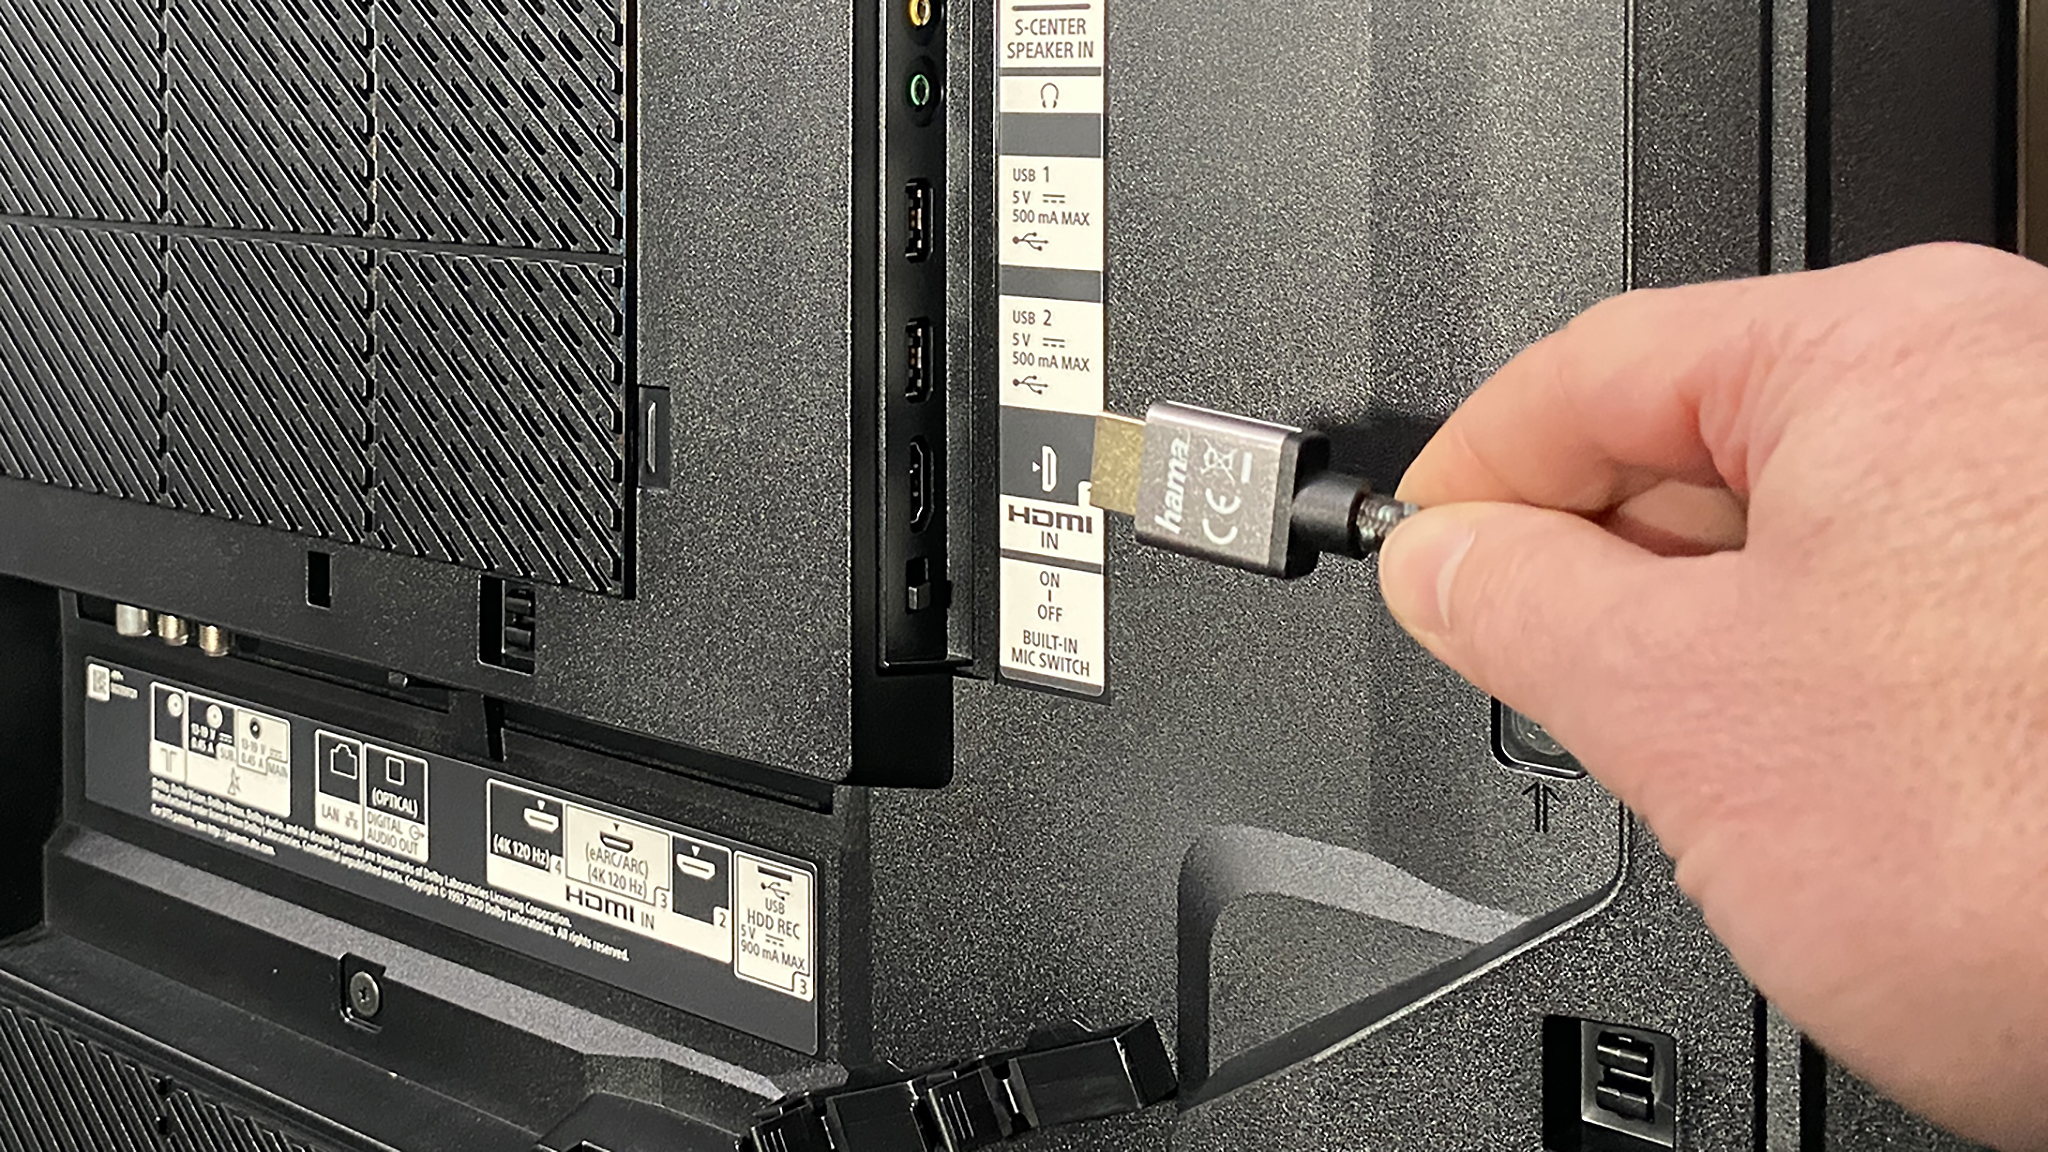 Überprüfen Sie den HDMI-Anschluss - Stellen Sie sicher, dass das HDMI-Kabel korrekt angeschlossen ist und dass der HDMI-Anschluss nicht beschädigt ist.
Überprüfen Sie die Lüftungsschlitze - Eine Überhitzung kann dazu führen, dass die PS4 nicht einschaltet. Stellen Sie sicher, dass die Lüftungsschlitze frei von Staub und Schmutz sind.